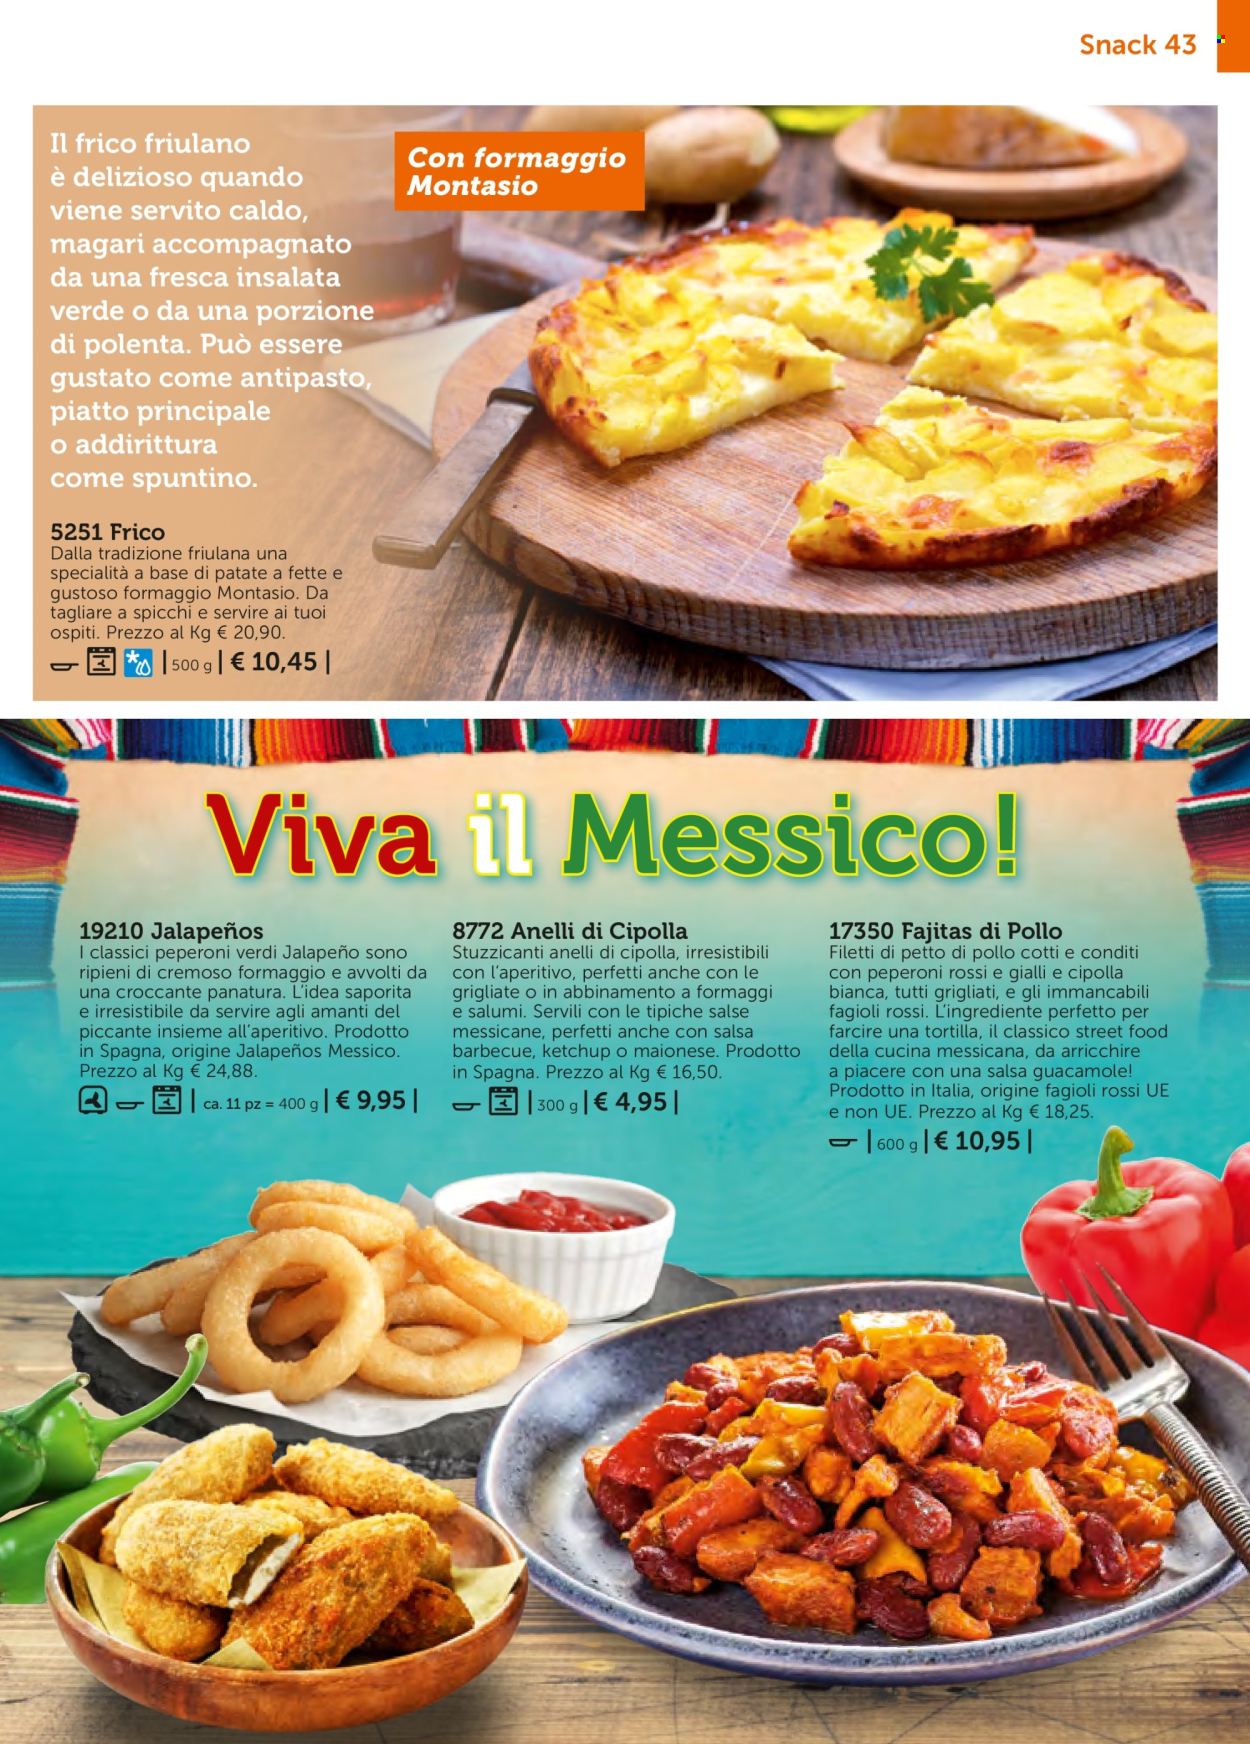 thumbnail - Volantino Bofrost - Prodotti in offerta - petto di pollo, anelli di cipolla fritti, antipasto, Montasio, aperitivo. Pagina 43.